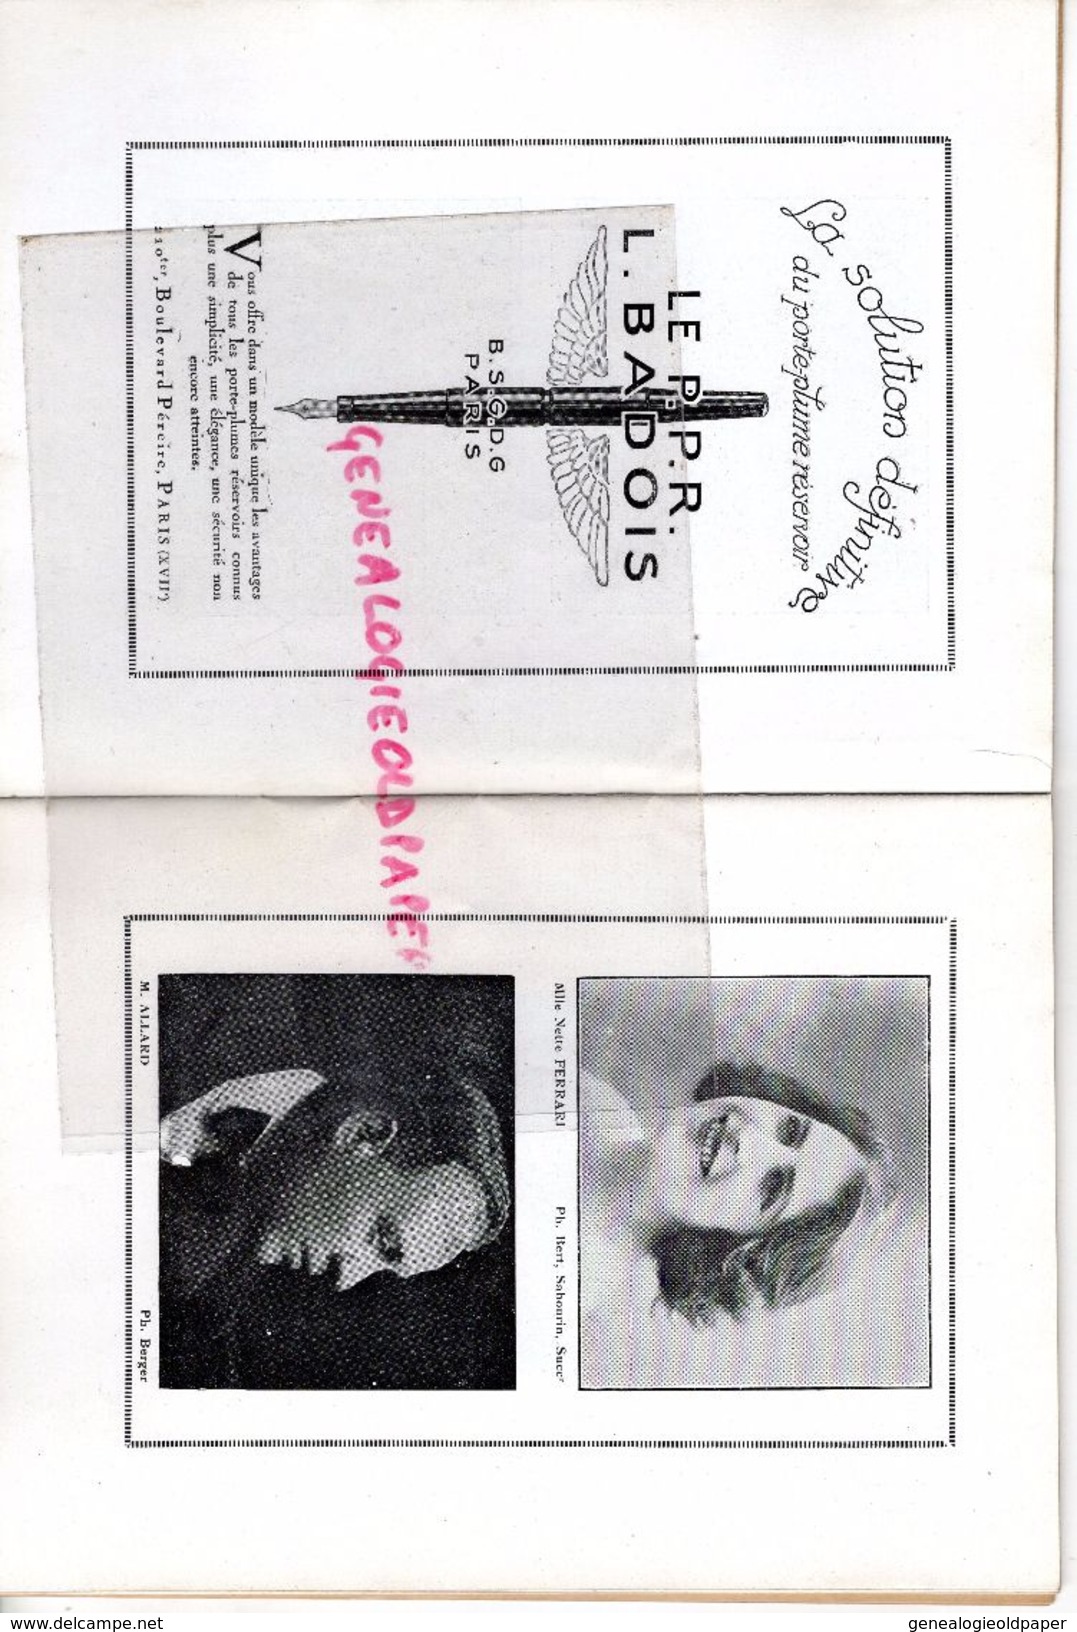 75- PARIS-PROGRAMME THEATRE OPERA COMIQUE-LA VIE DE BOHEME-29-12-1921-ROGER-TRANTOUL-SIBILLE-ALBERS-PAVLOFF-VIEUILLE-